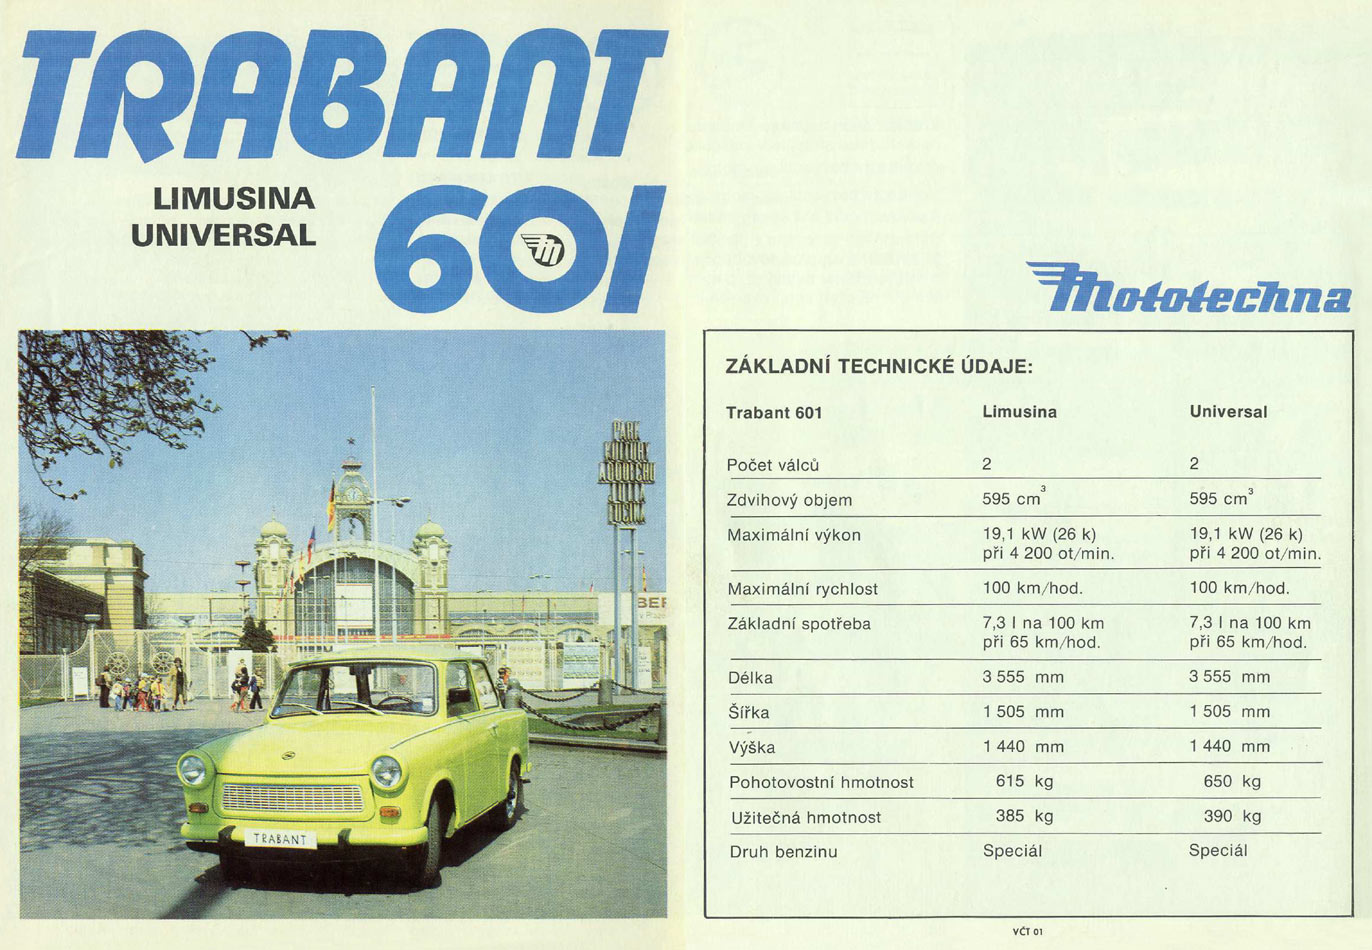 1979 - Trabant 601 - Seite 1 und 4